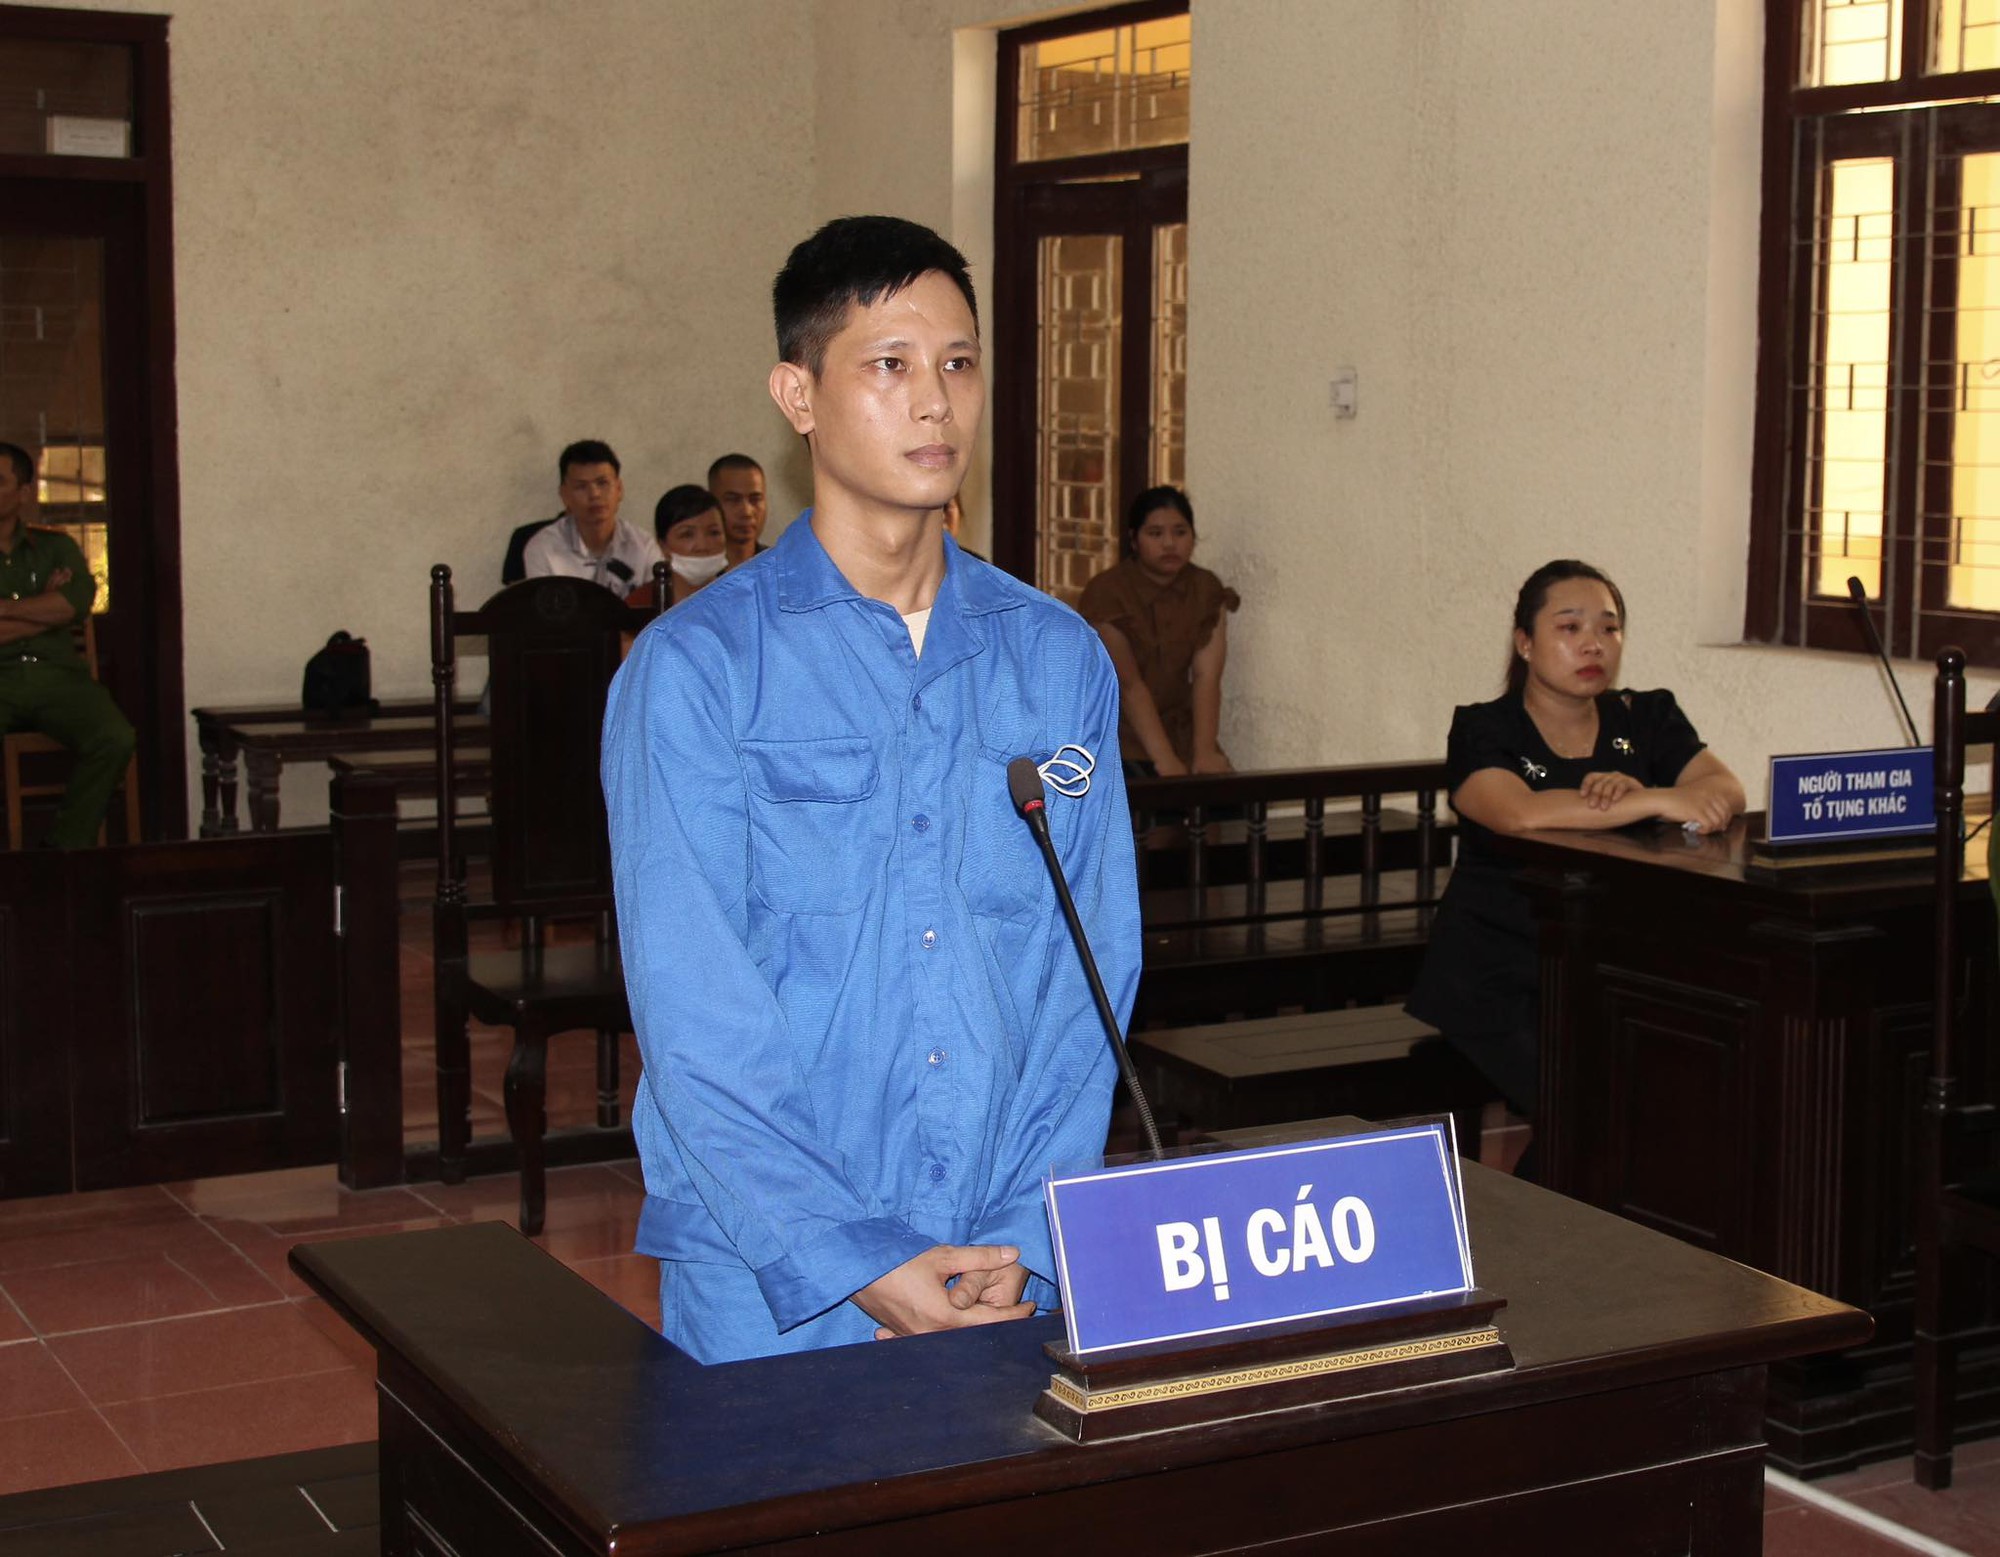 Lĩnh án tù vì cưỡng đoạt tiền của Cảnh sát Giao thông ở Hải Dương - Ảnh 3.